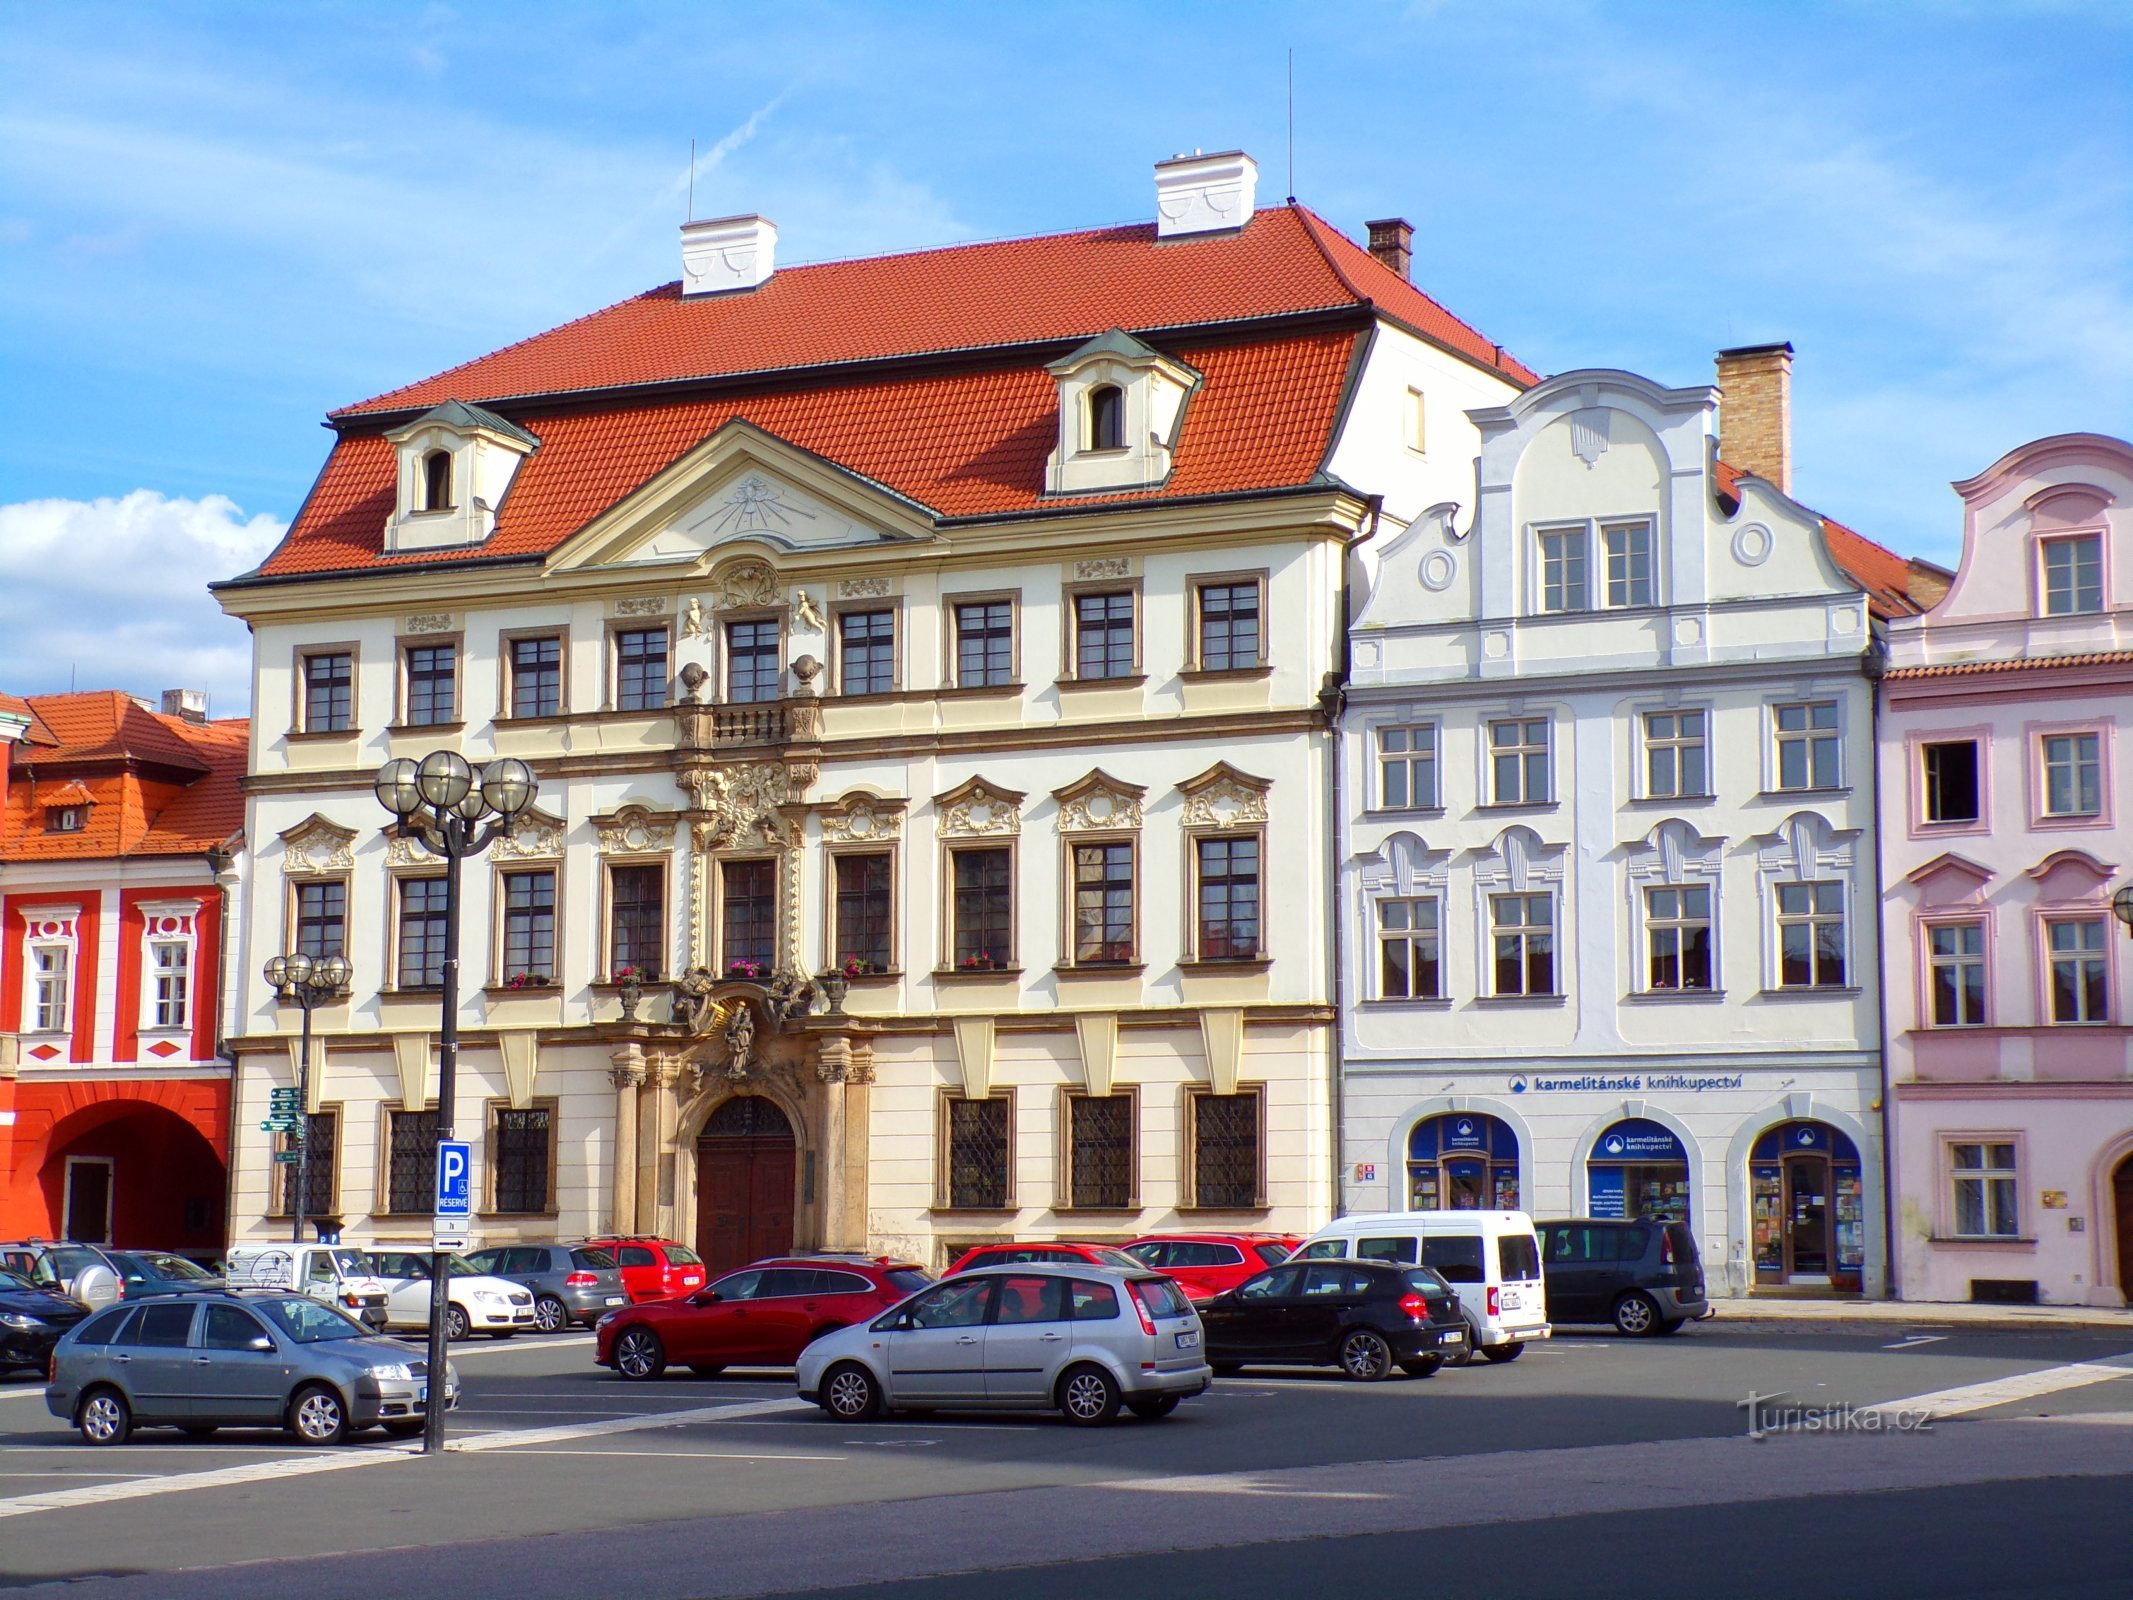 Velké náměstí số 35-36 (Hradec Králové, 17.6.2022/XNUMX/XNUMX)